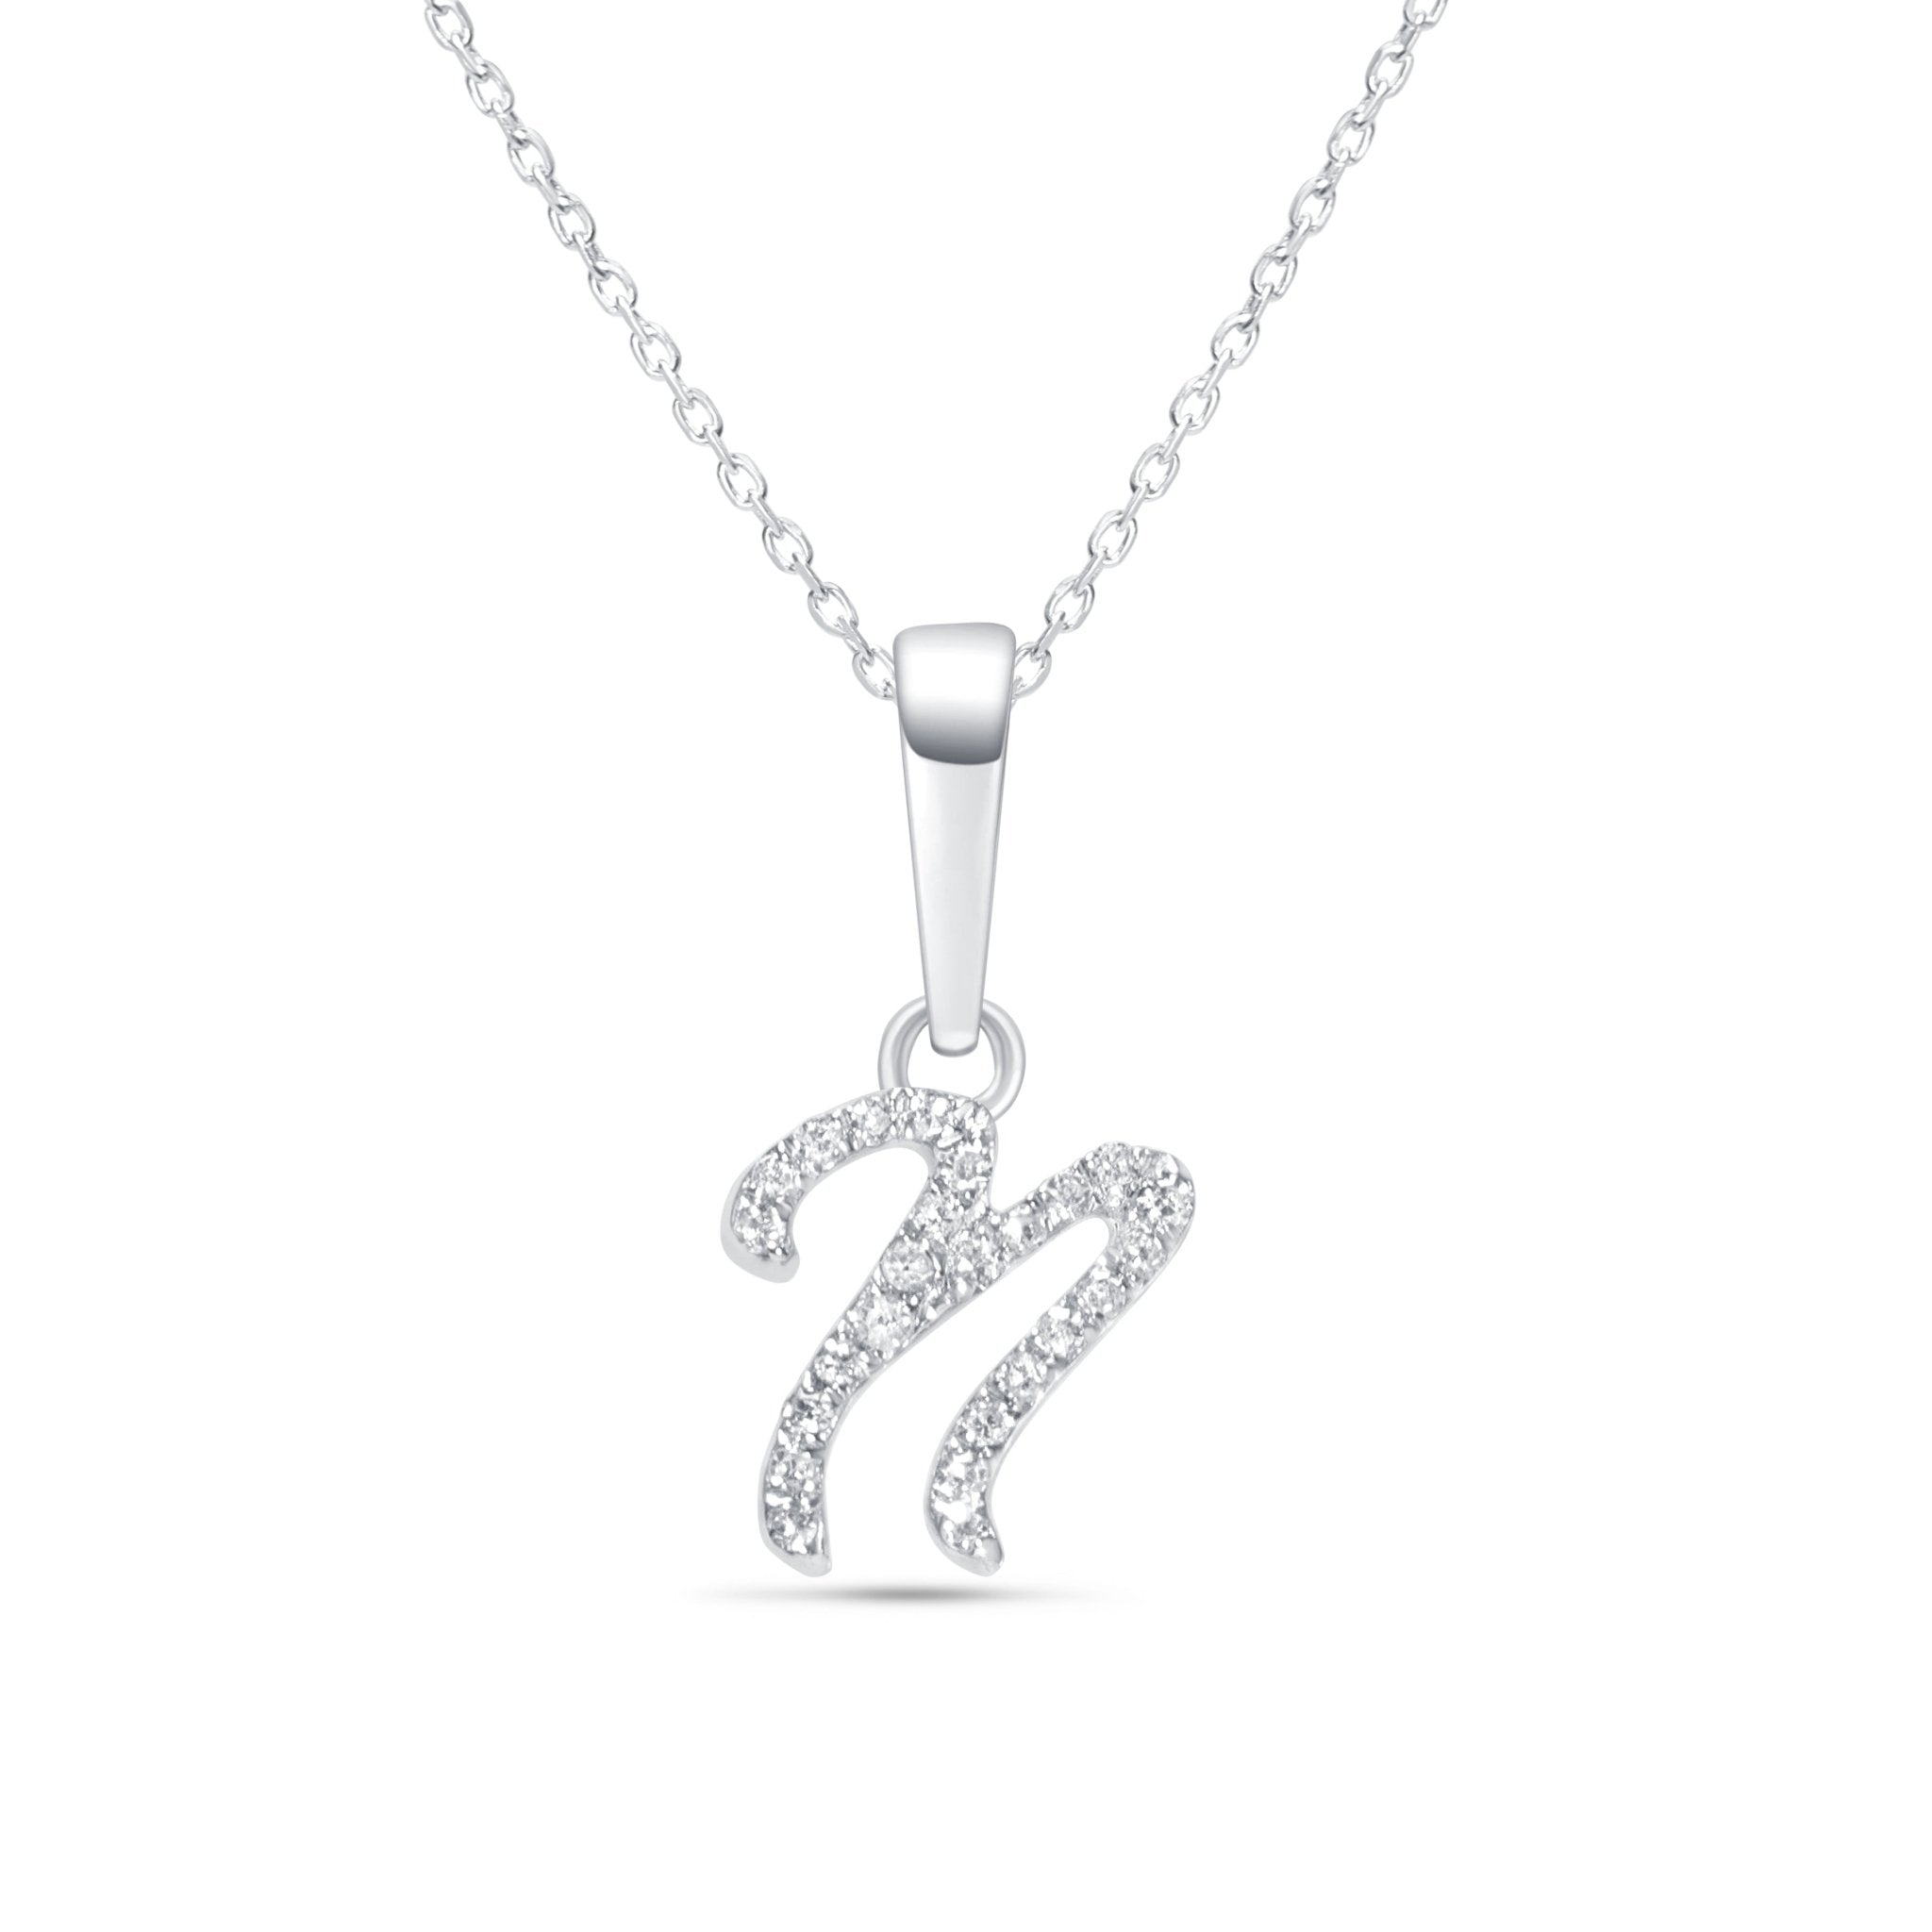 Cursive Diamond Initial Necklace - N Necklaces Estella Collection #product_description# 18557 14k Diamond Gemstone #tag4# #tag5# #tag6# #tag7# #tag8# #tag9# #tag10# 14k White Gold